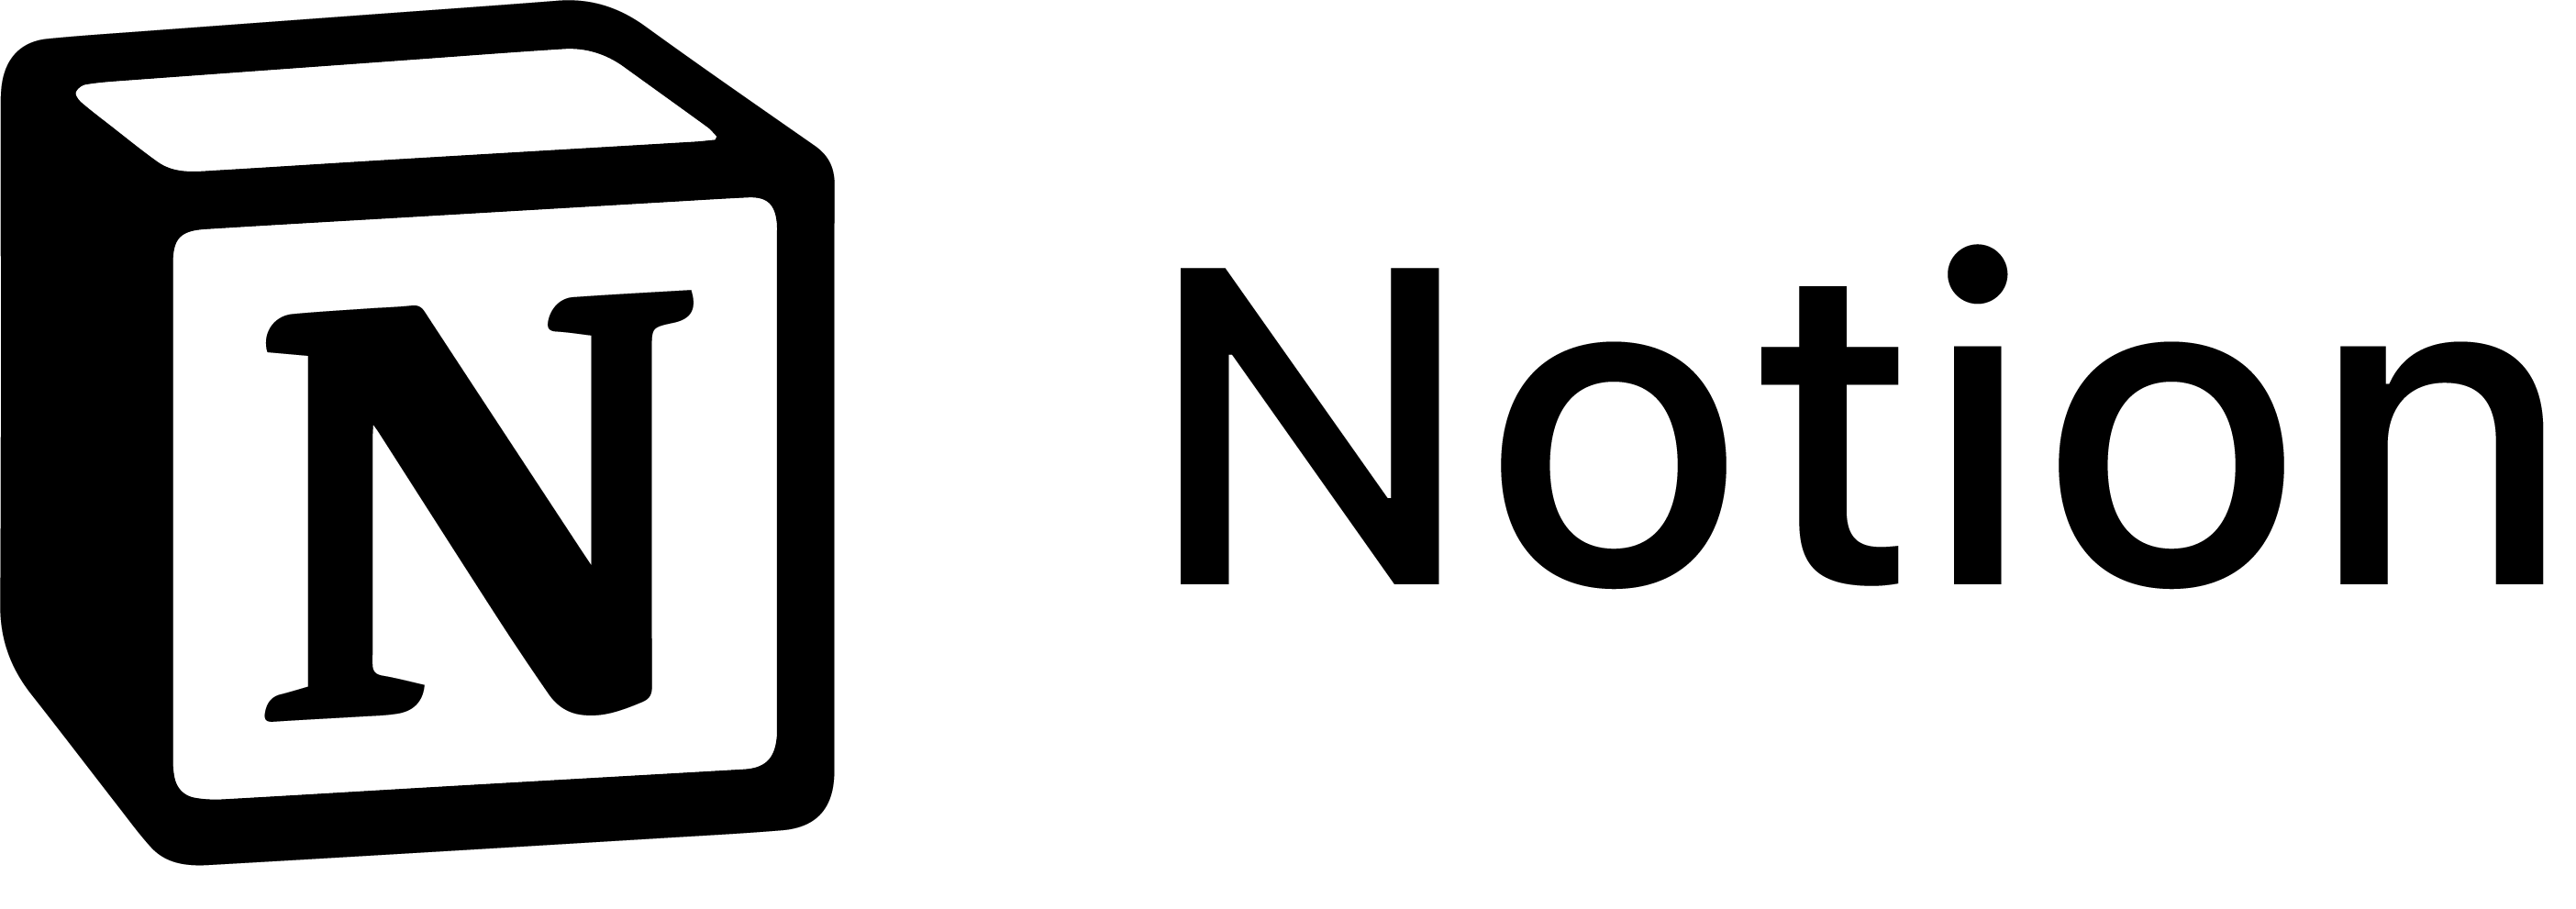 Notion Logo PNG